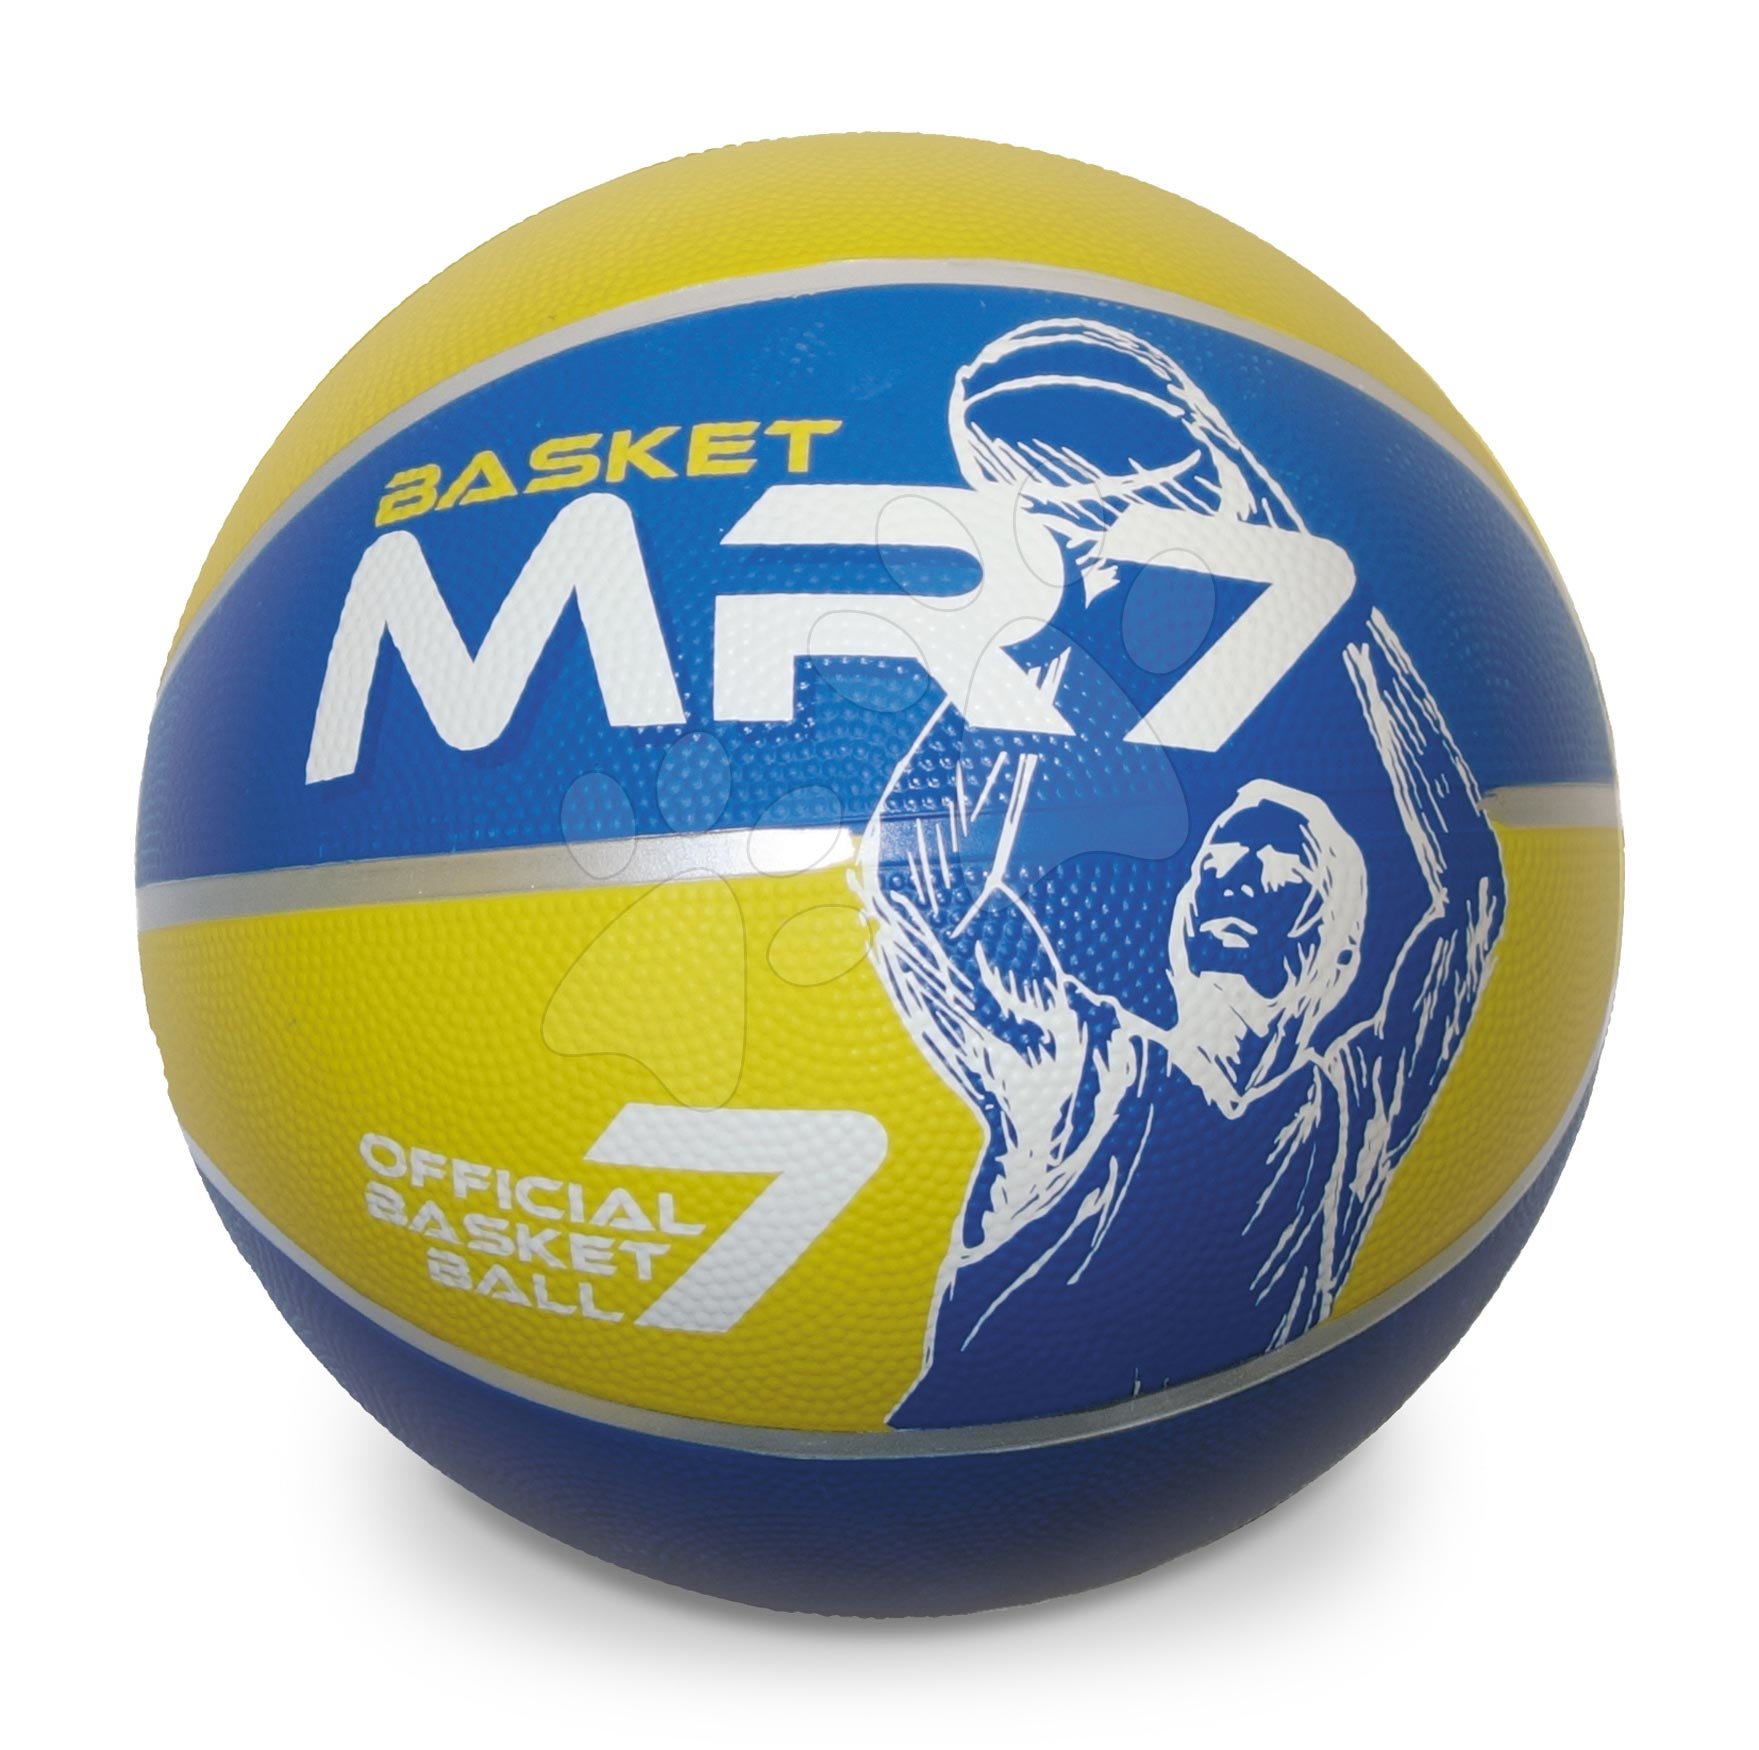 Basketbalová lopta Basket MR7 Mondo veľkosť 7 váha 600 g